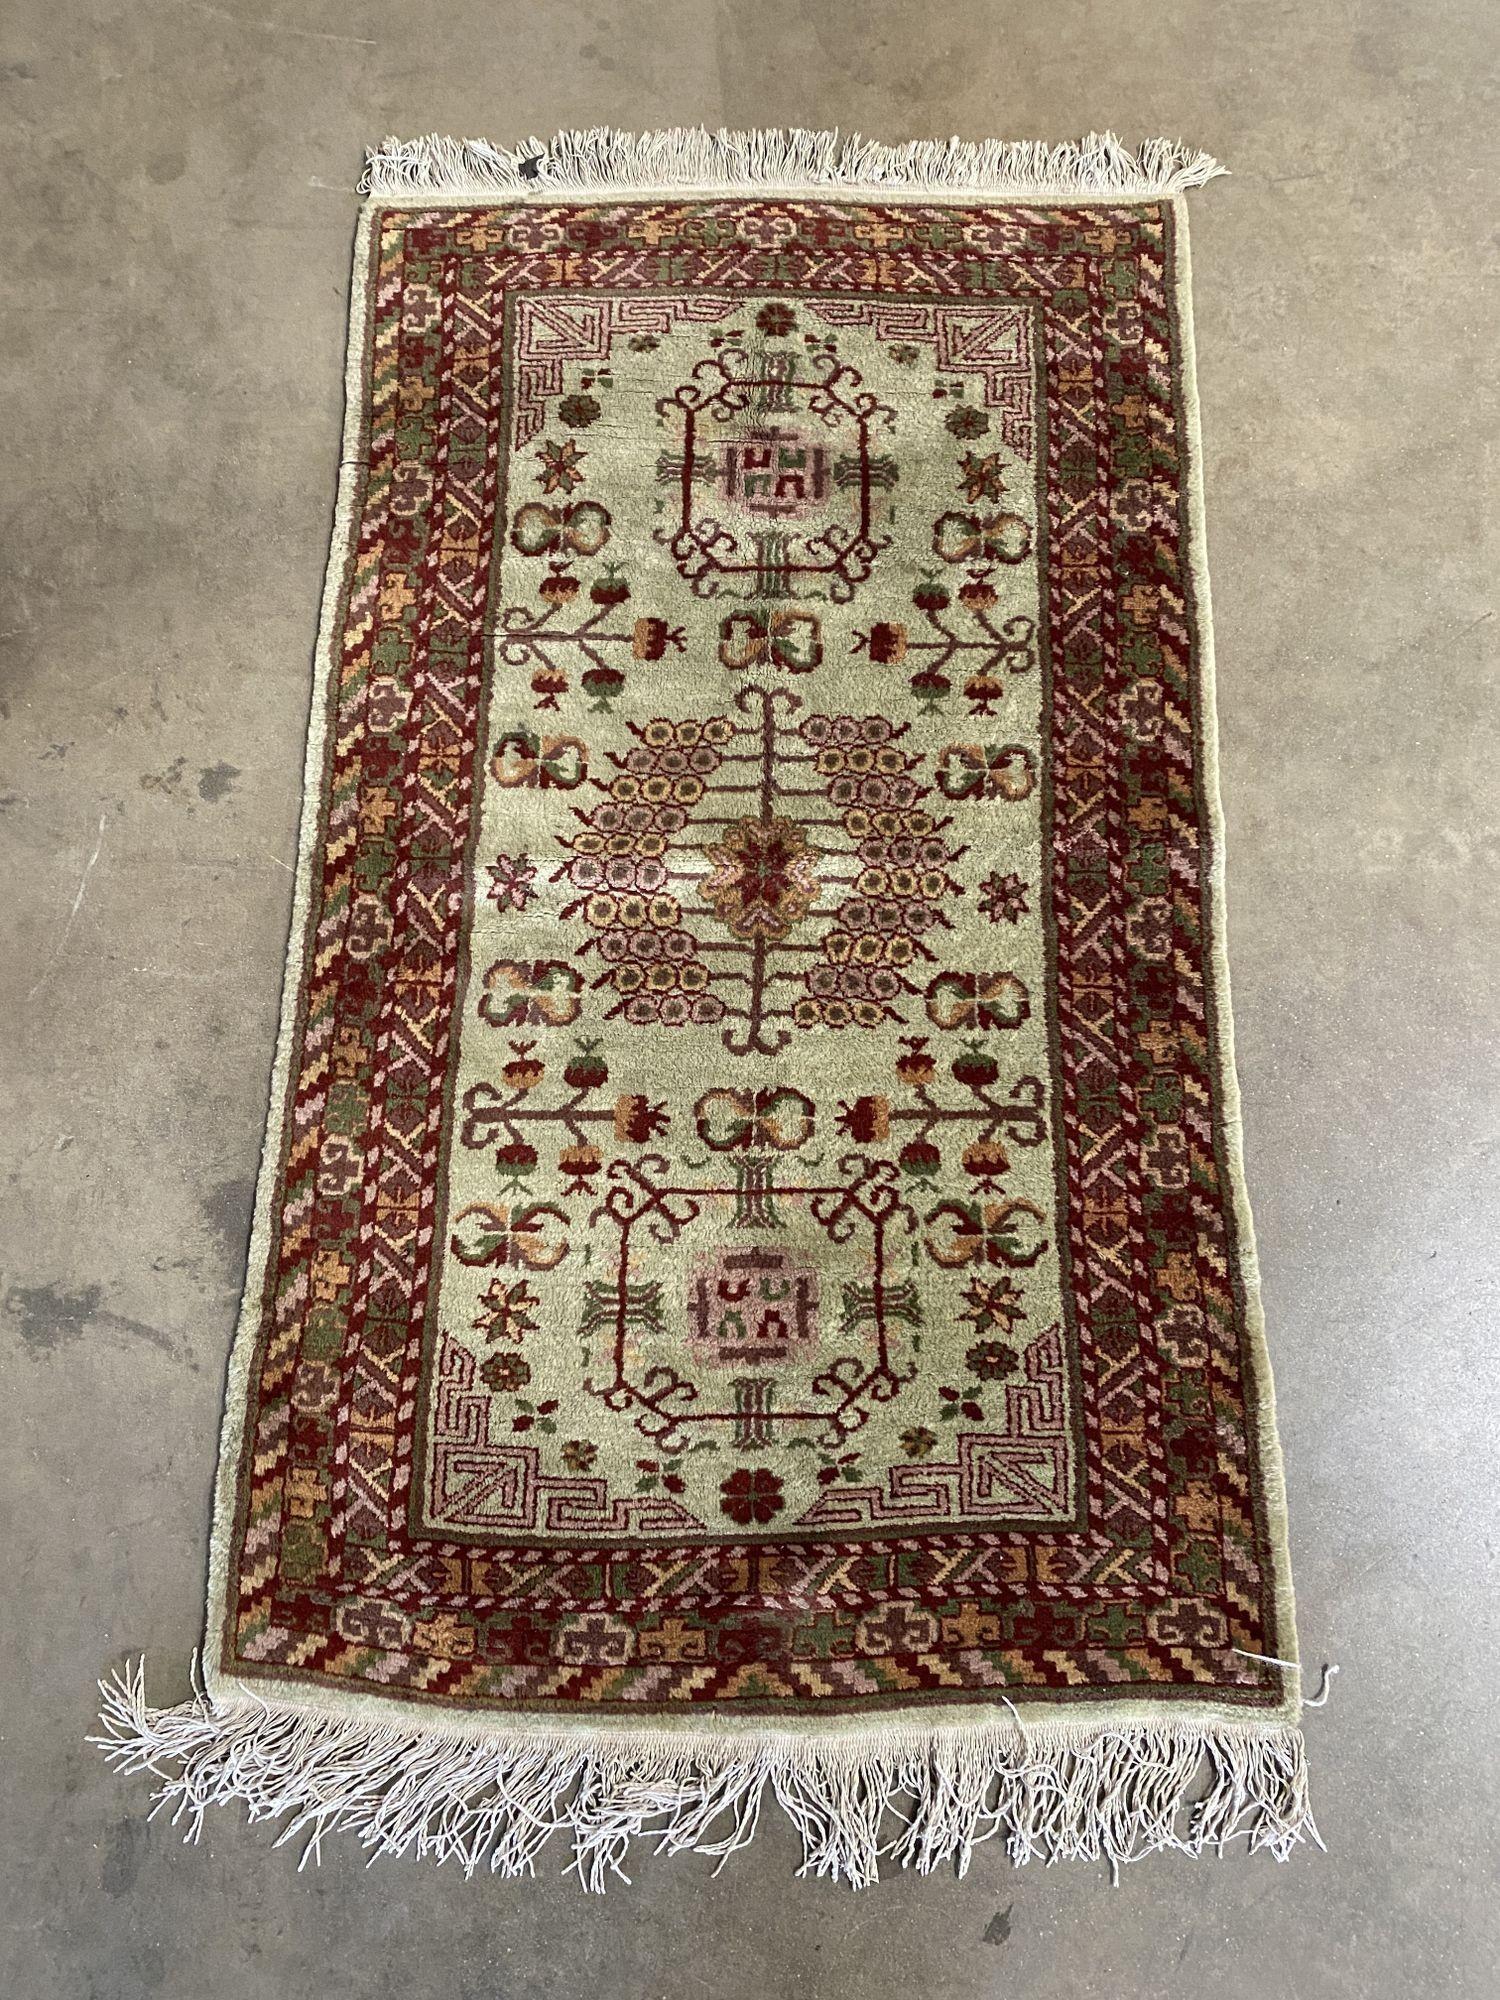 Joli tapis persan 1930 en excellente forme pour l'âge, une belle addition à toute maison raffinée.